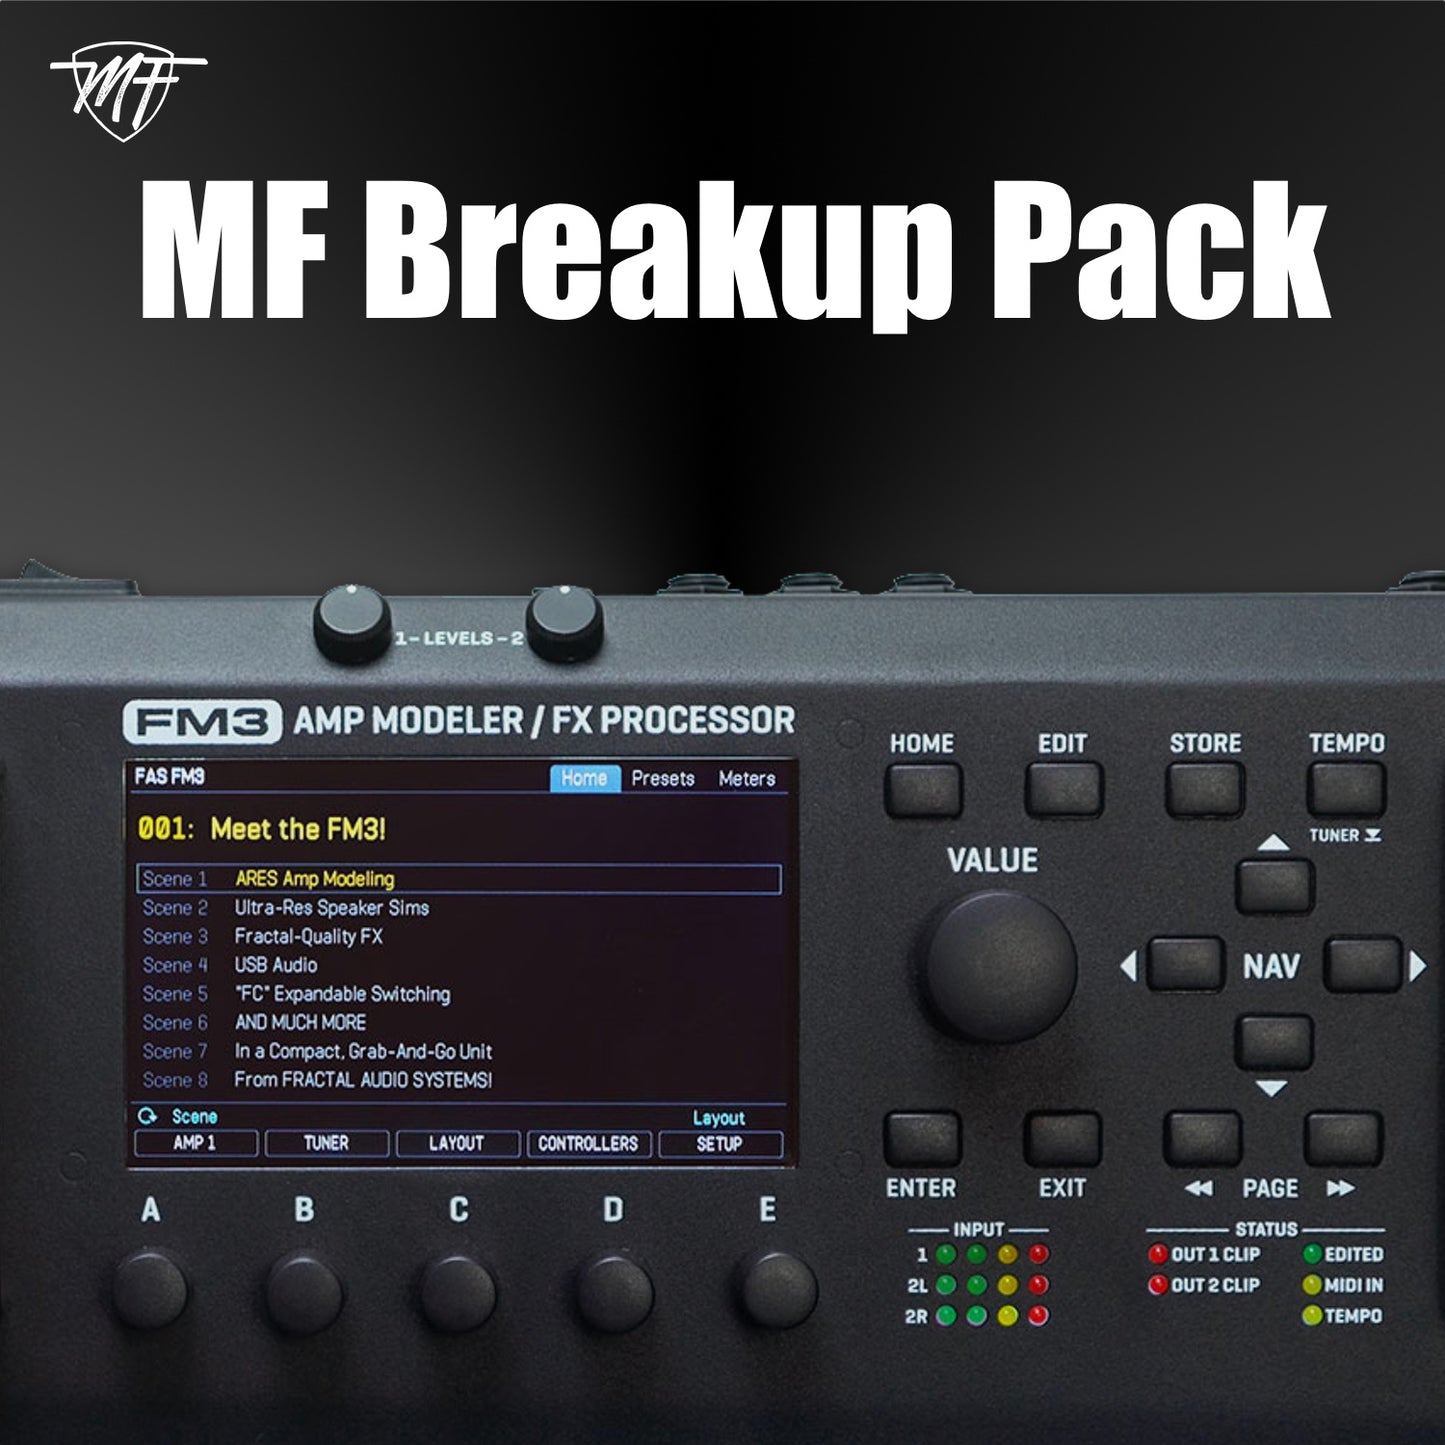 MF Breakup Pack FM3